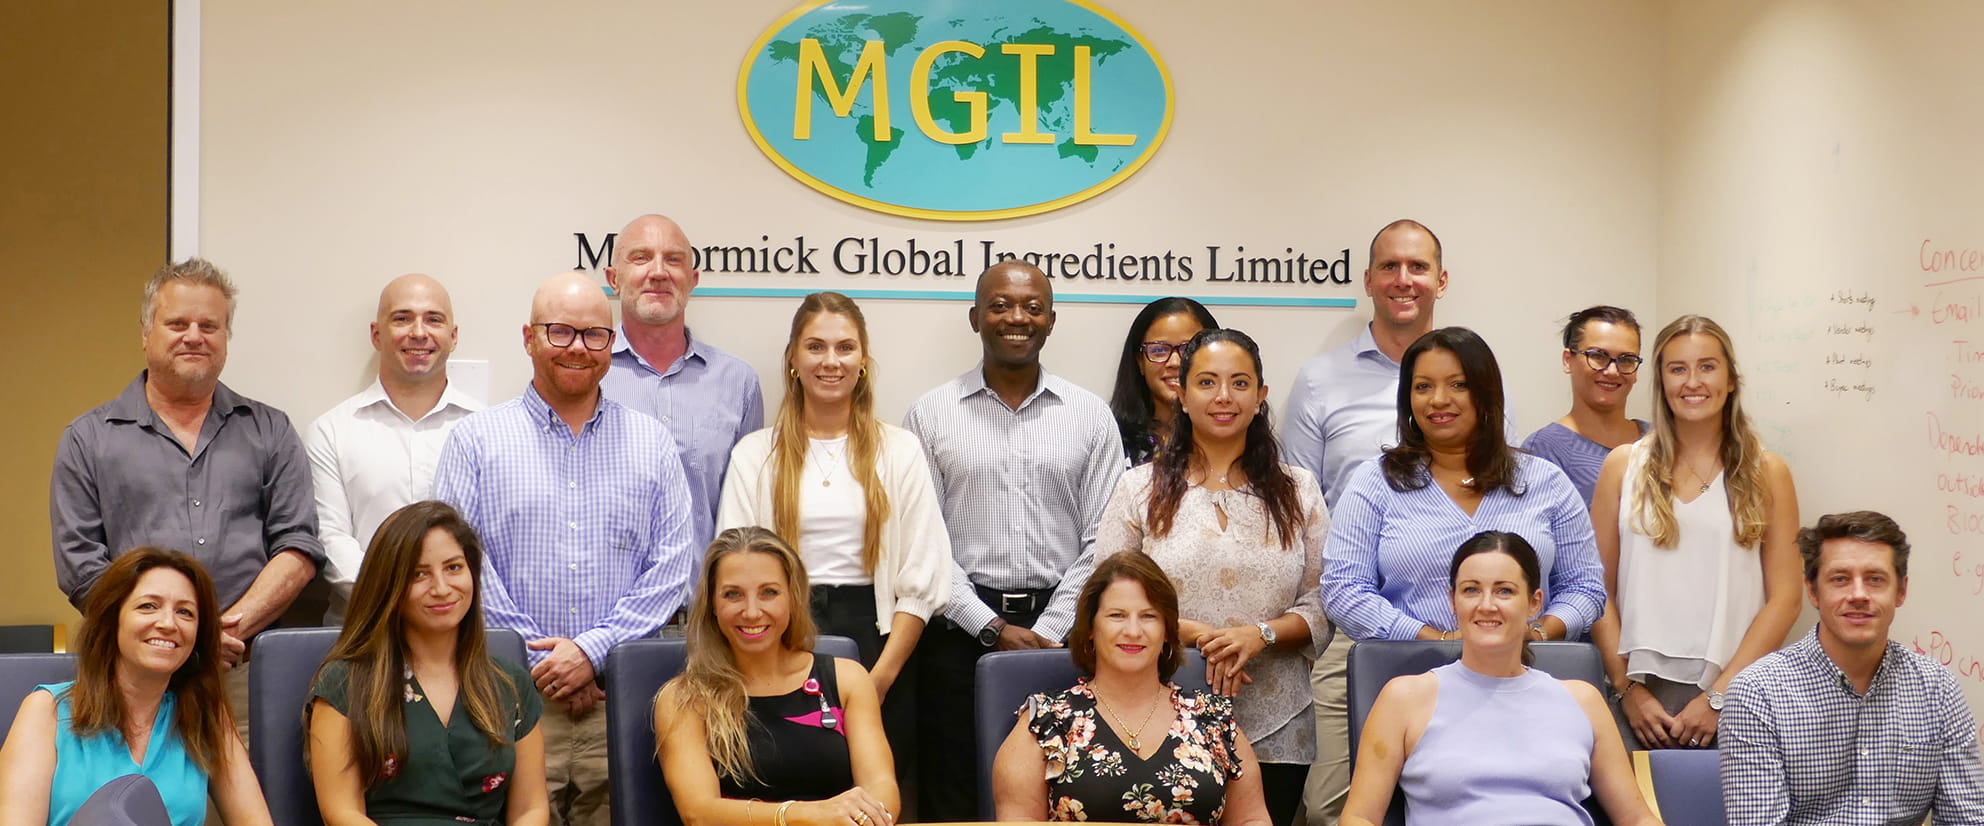 McCormick Global Ingredients Limited MGIL team photo